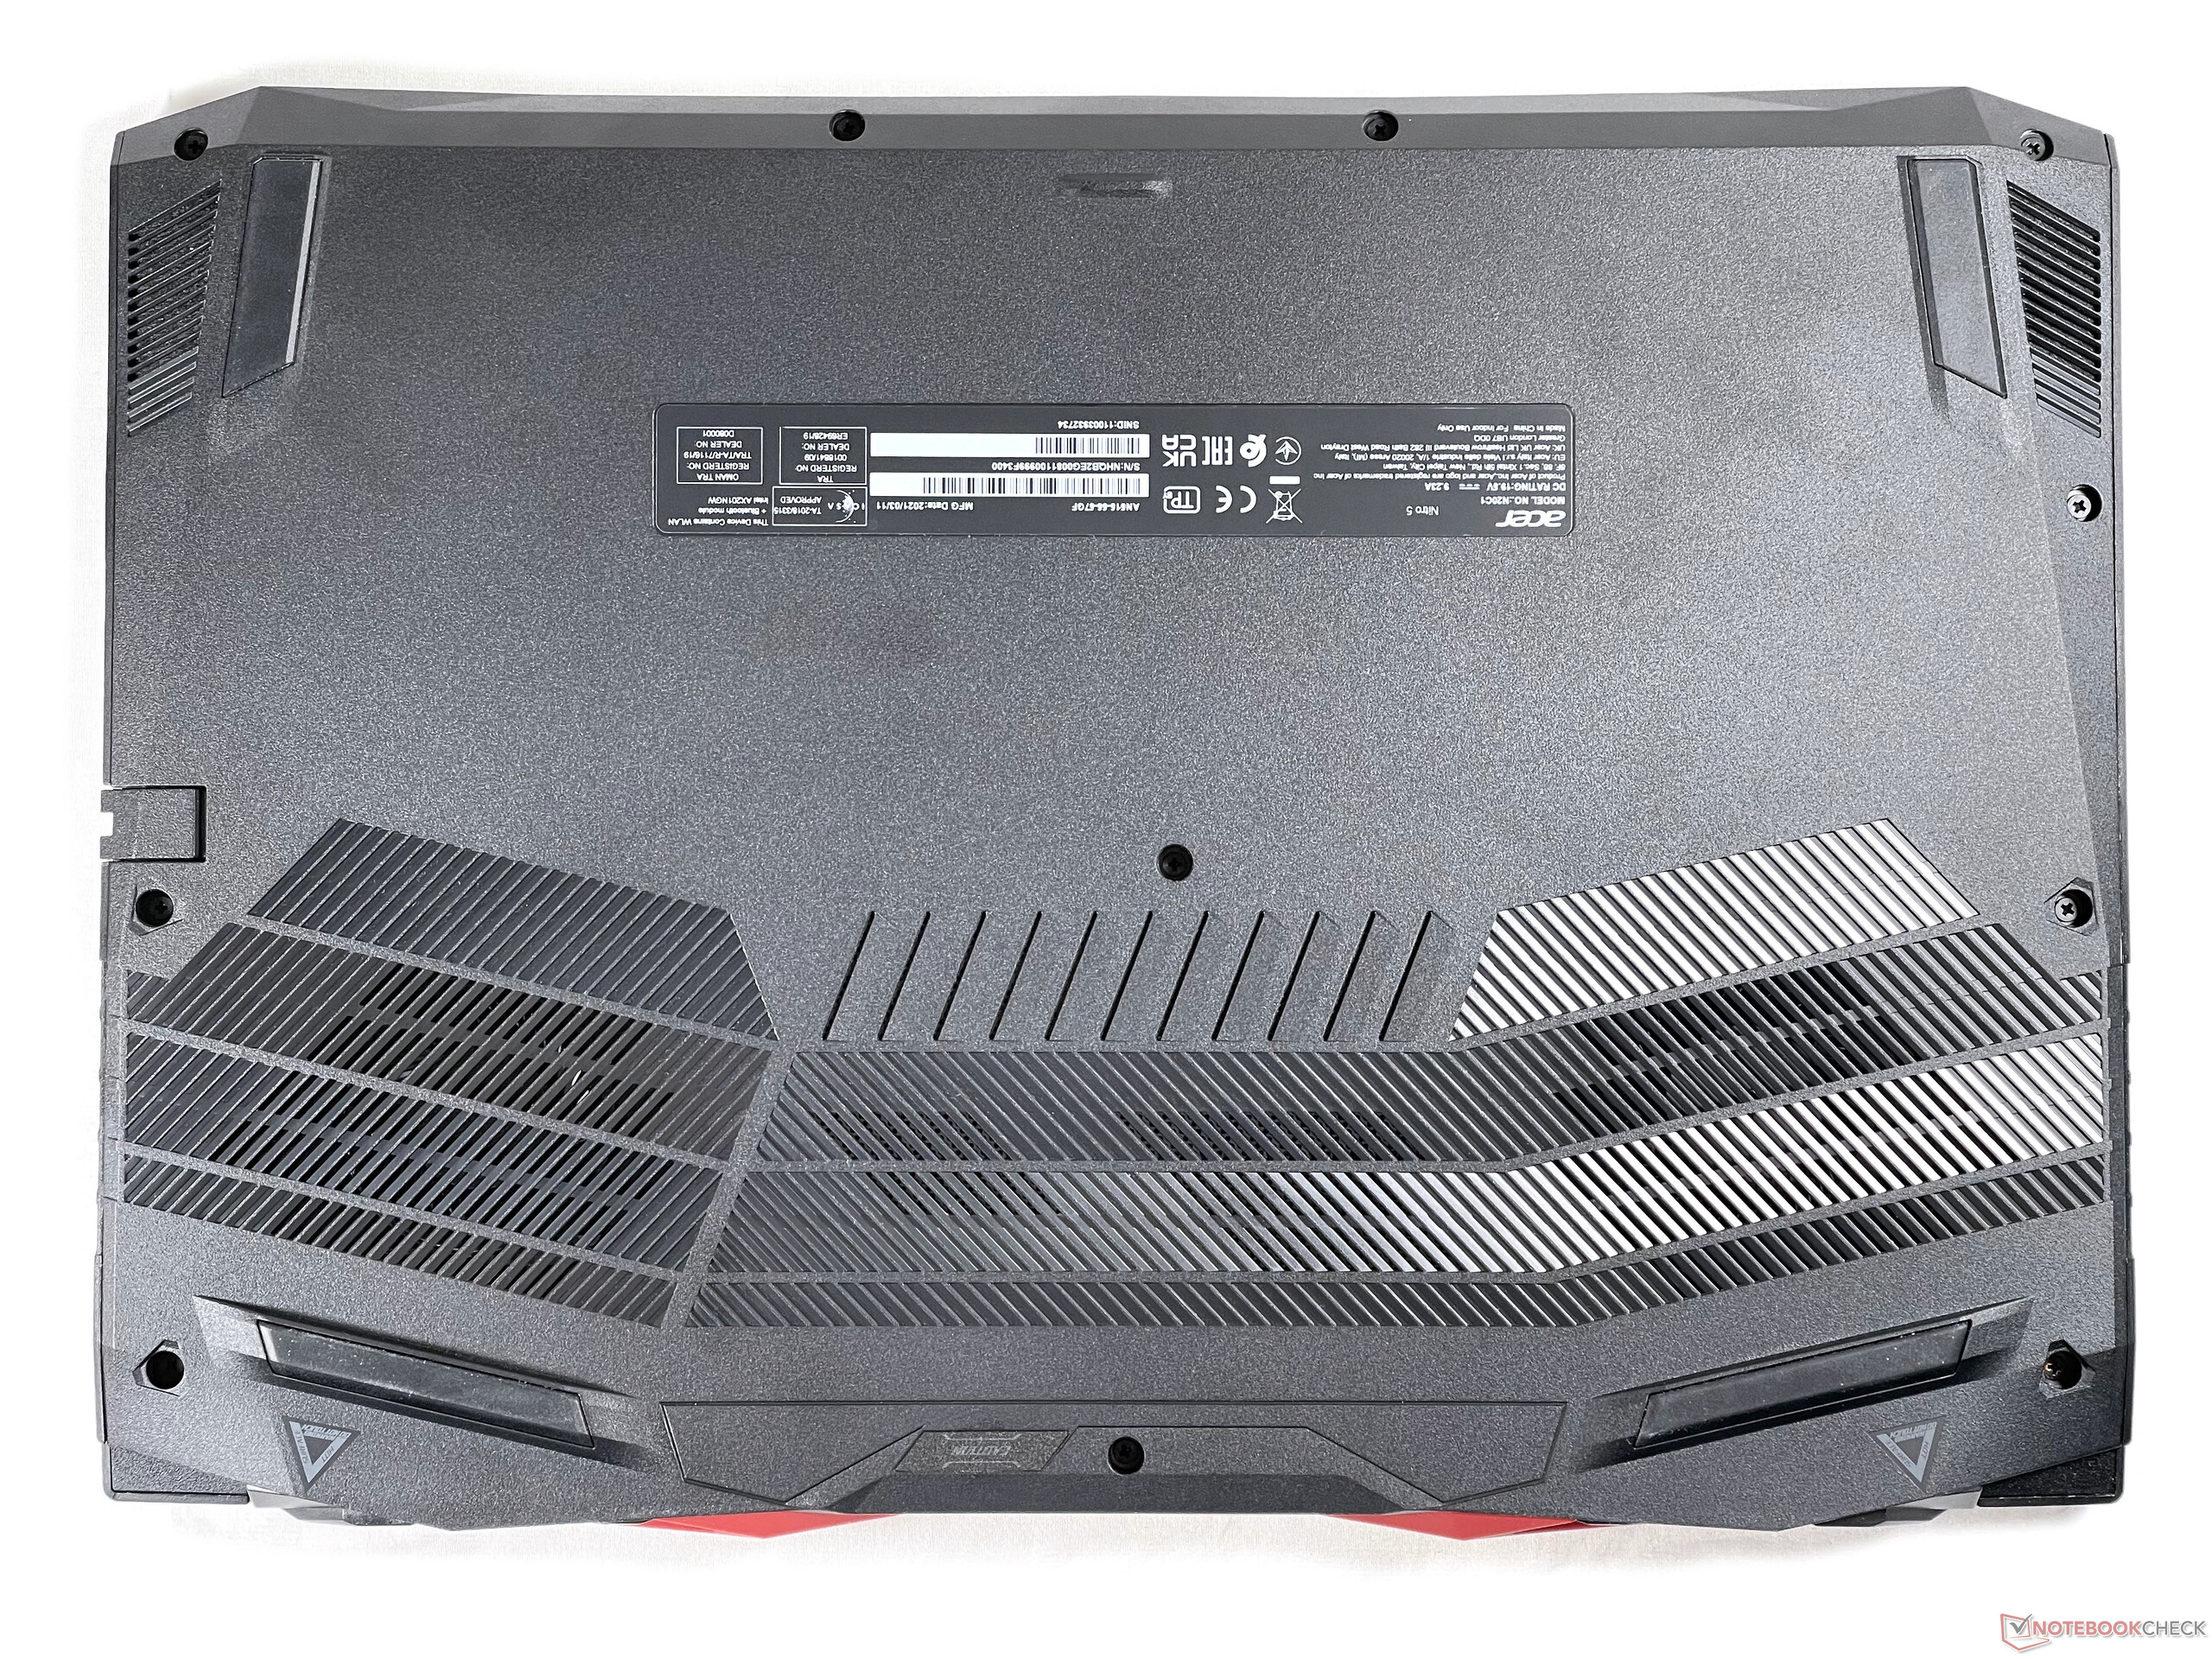 Acer Nitro 5 Ordinateur portable Gamer, AN515-55, Noir